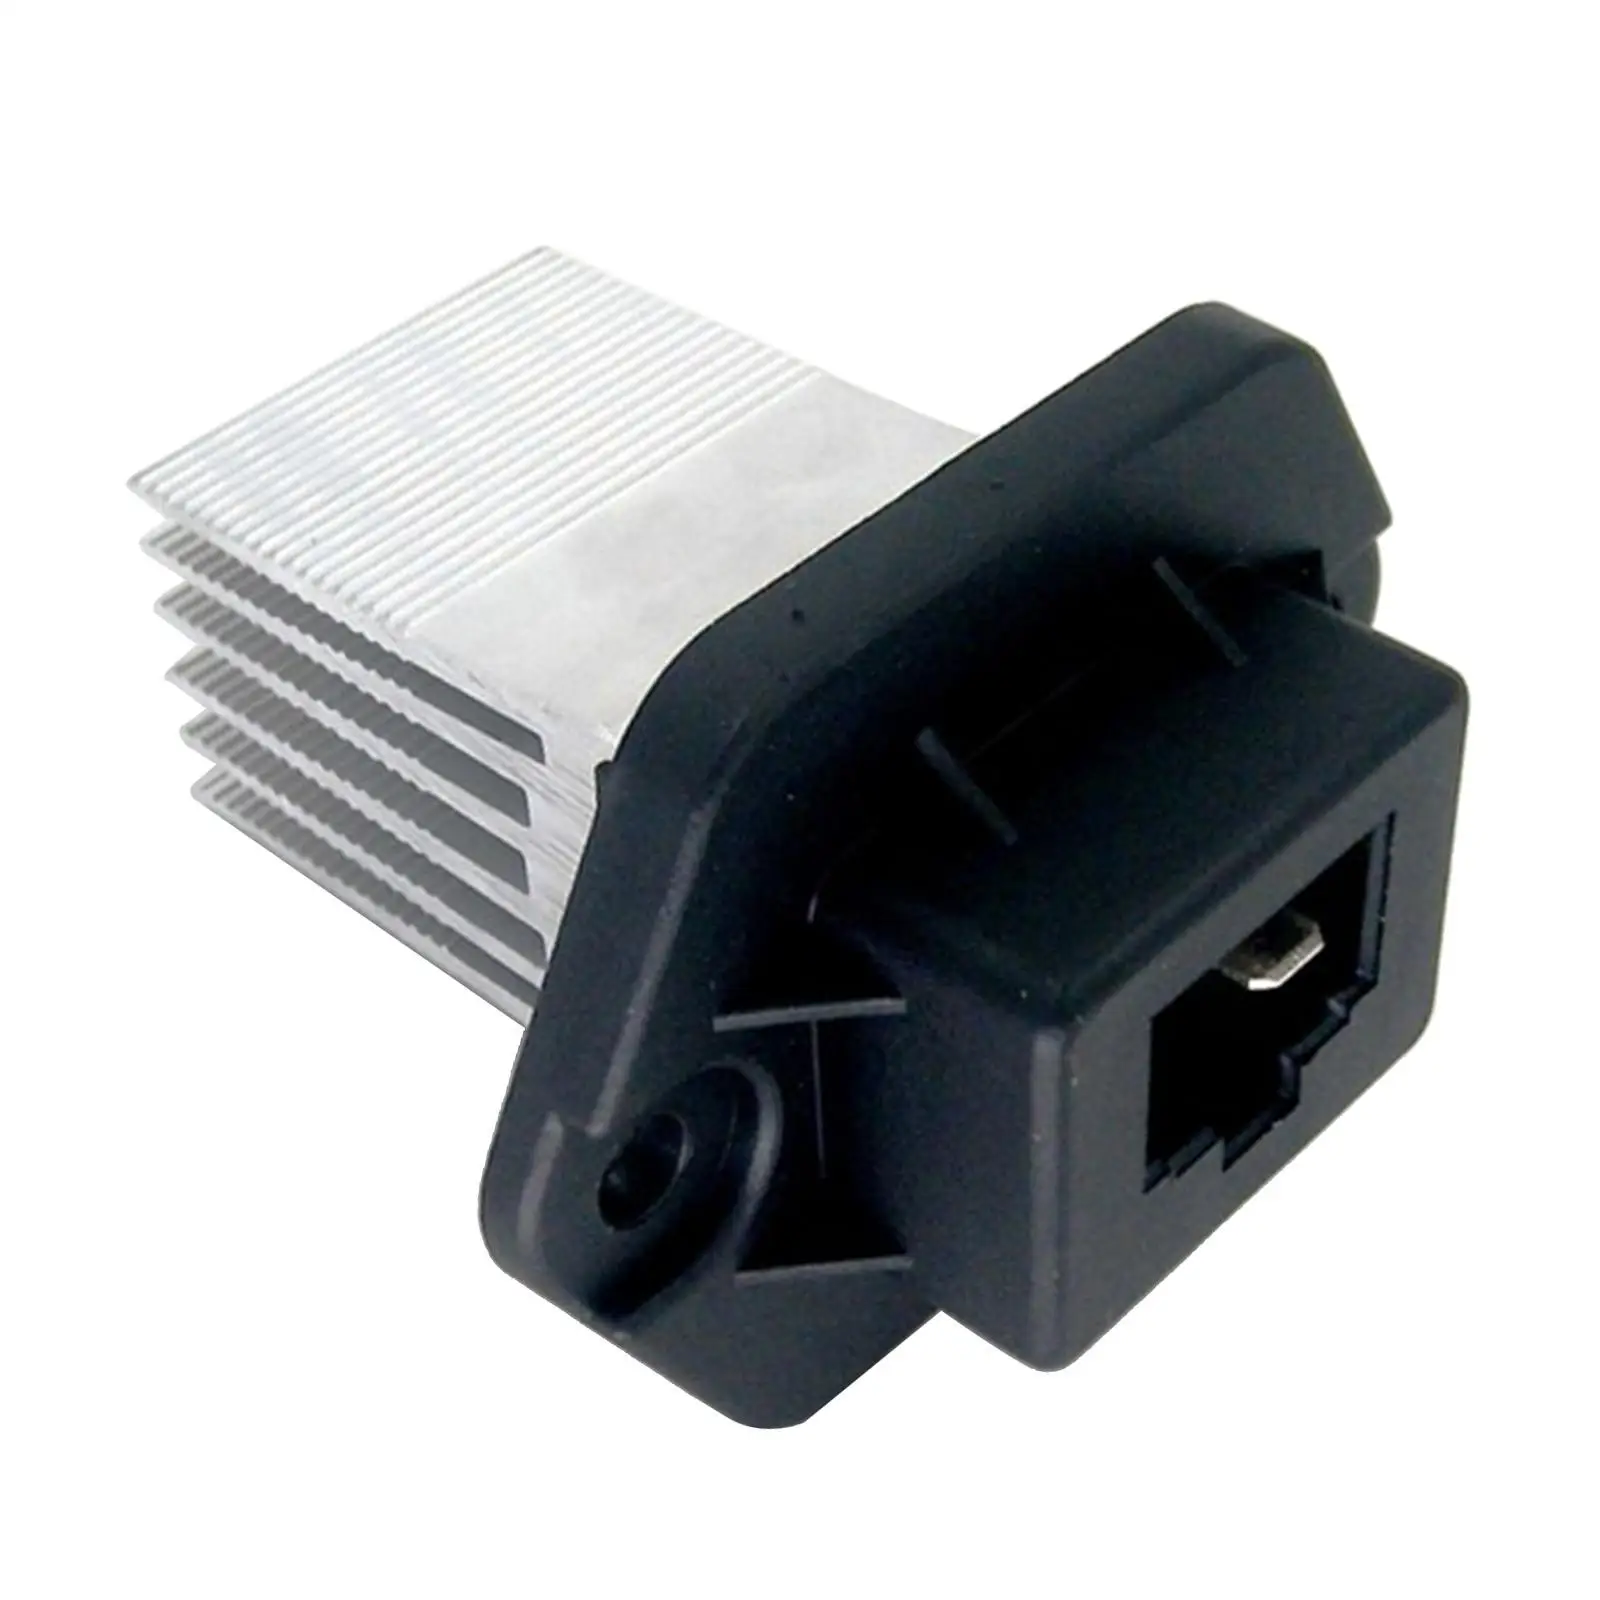 Car  Blower Motor Resistor Replacement for   KIA   97179-1F200